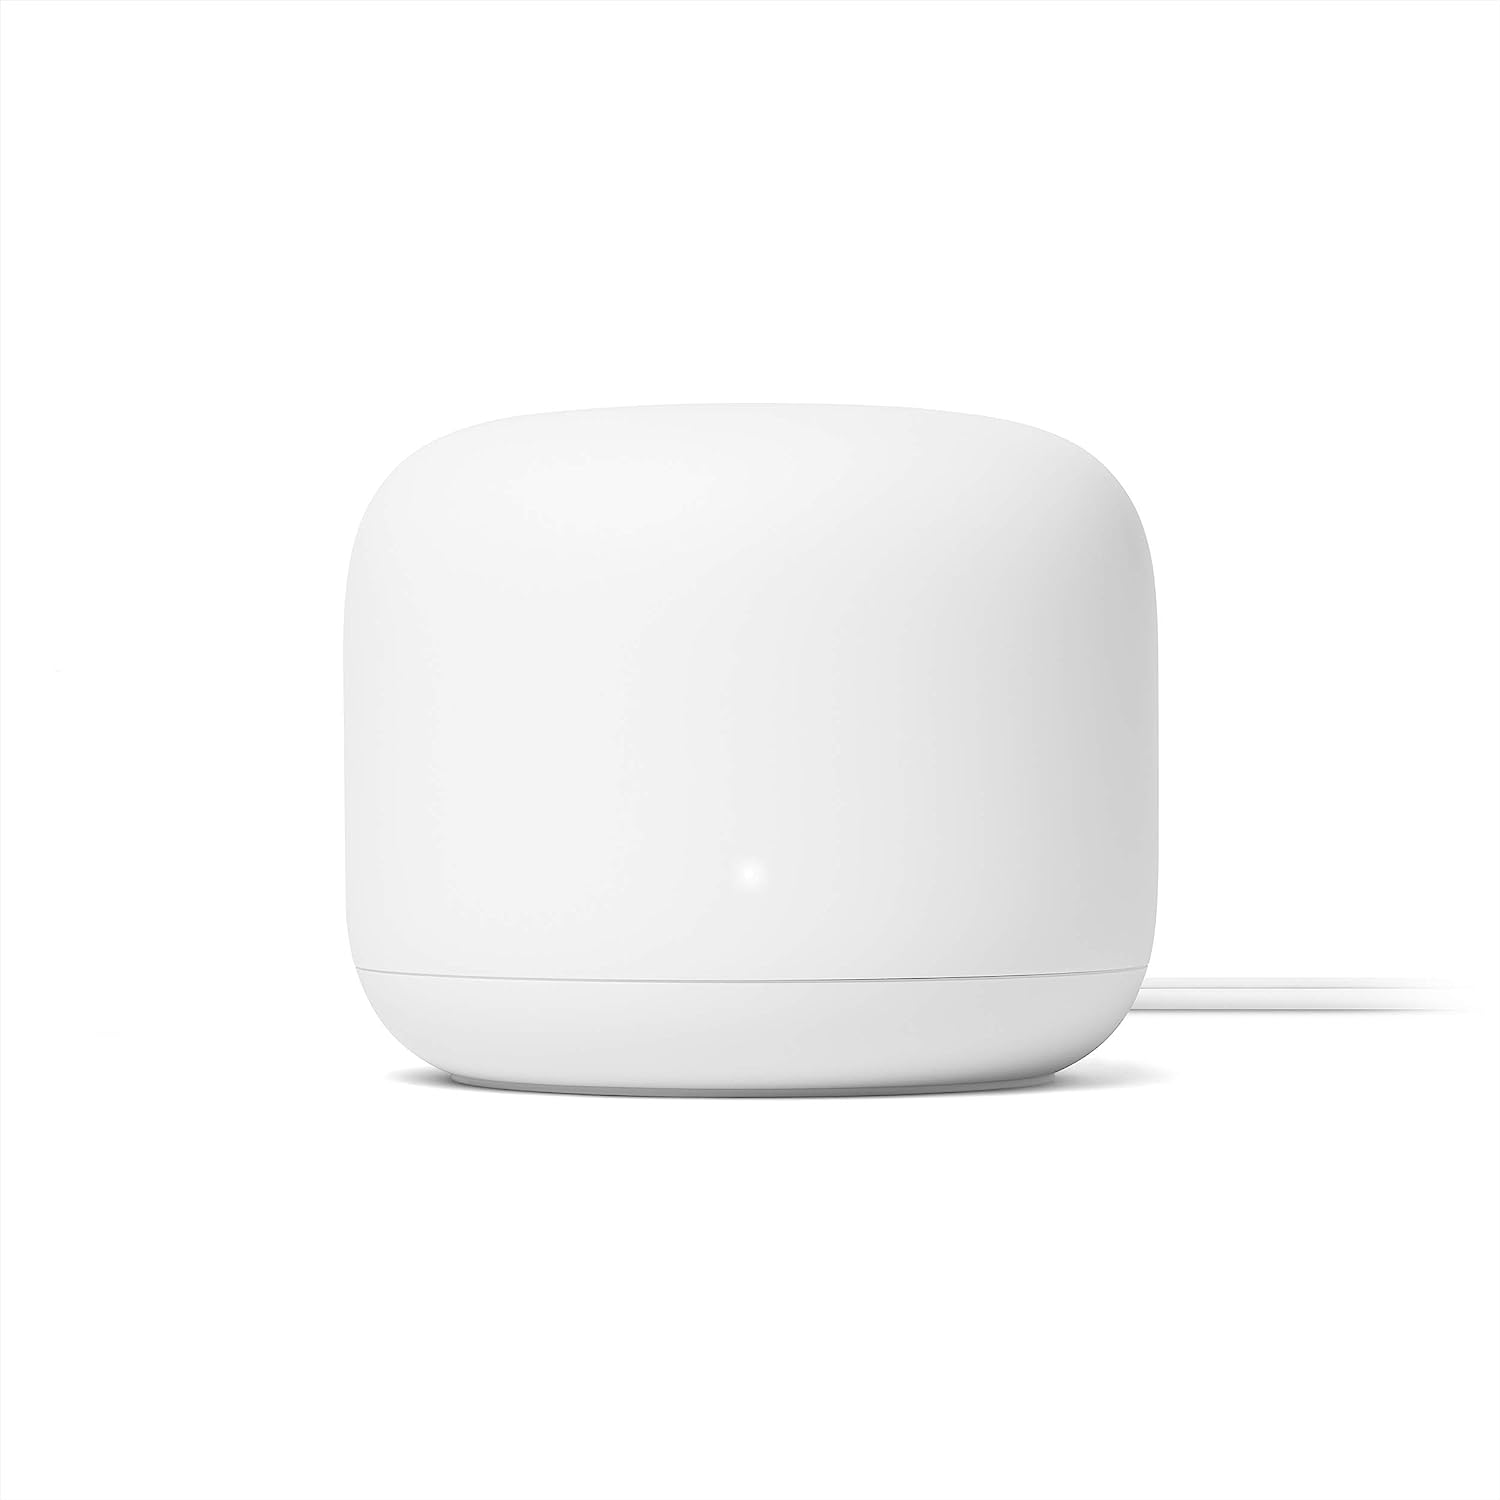 Wi-Fi роутер Google Nest Wifi Mesh WiFi System AC2200, белый фотографии